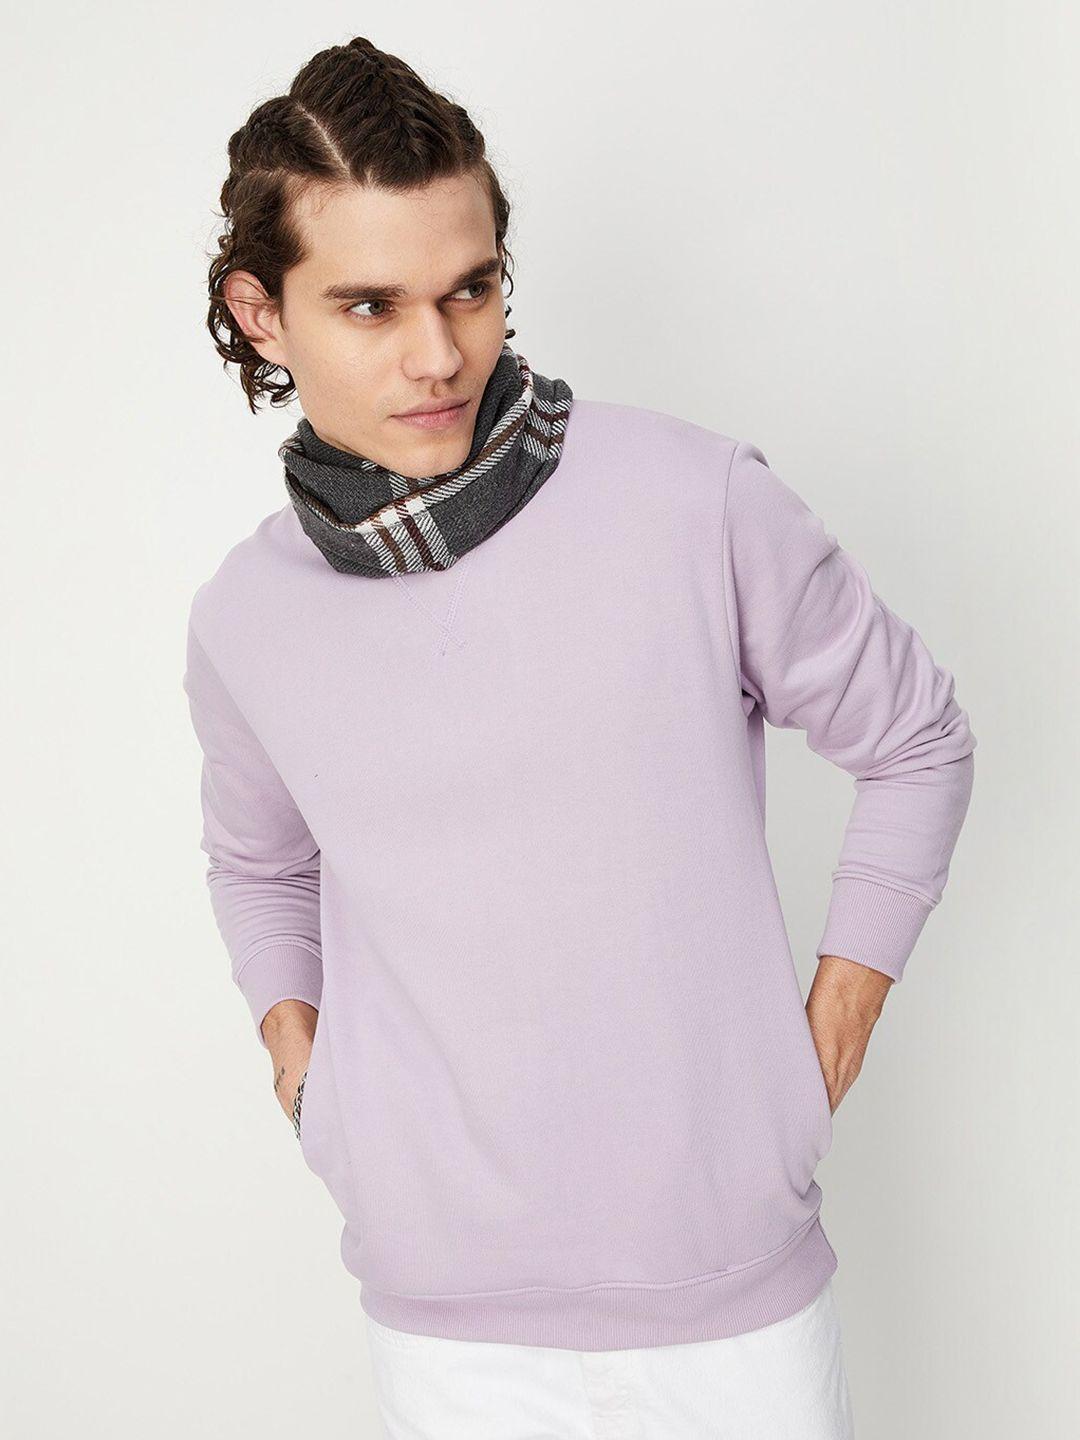 max-round-neck-pullover-sweatshirt